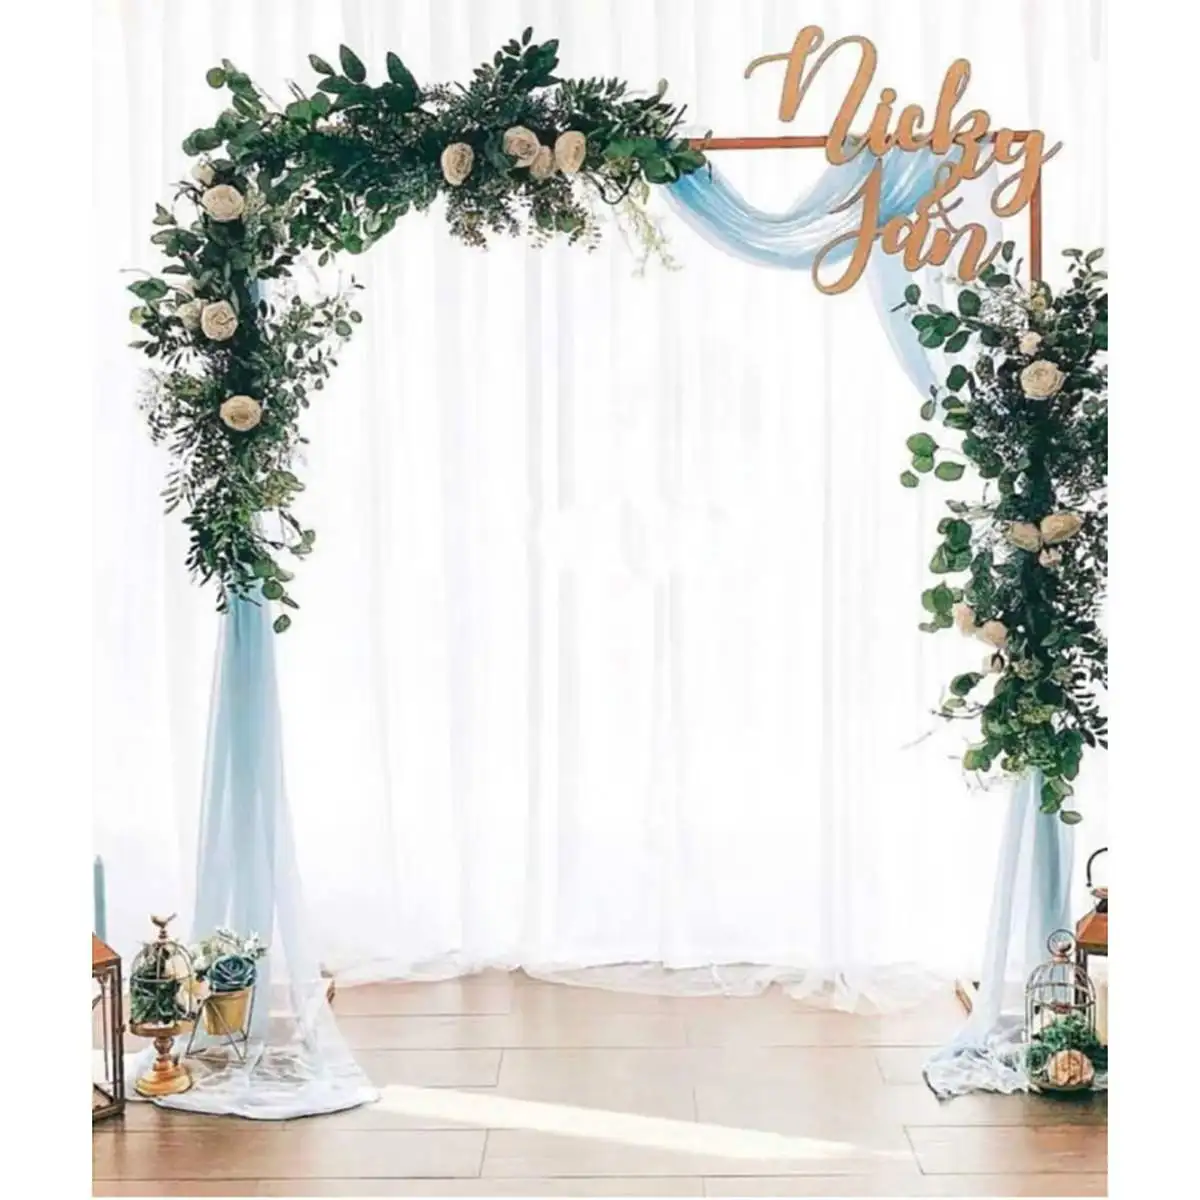 Marco de fondo de escenario de boda de 2M X 2M, soporte de flores decorativo de hierro forjado, estante de arco cuadrado de boda personalizado, decoración de boda